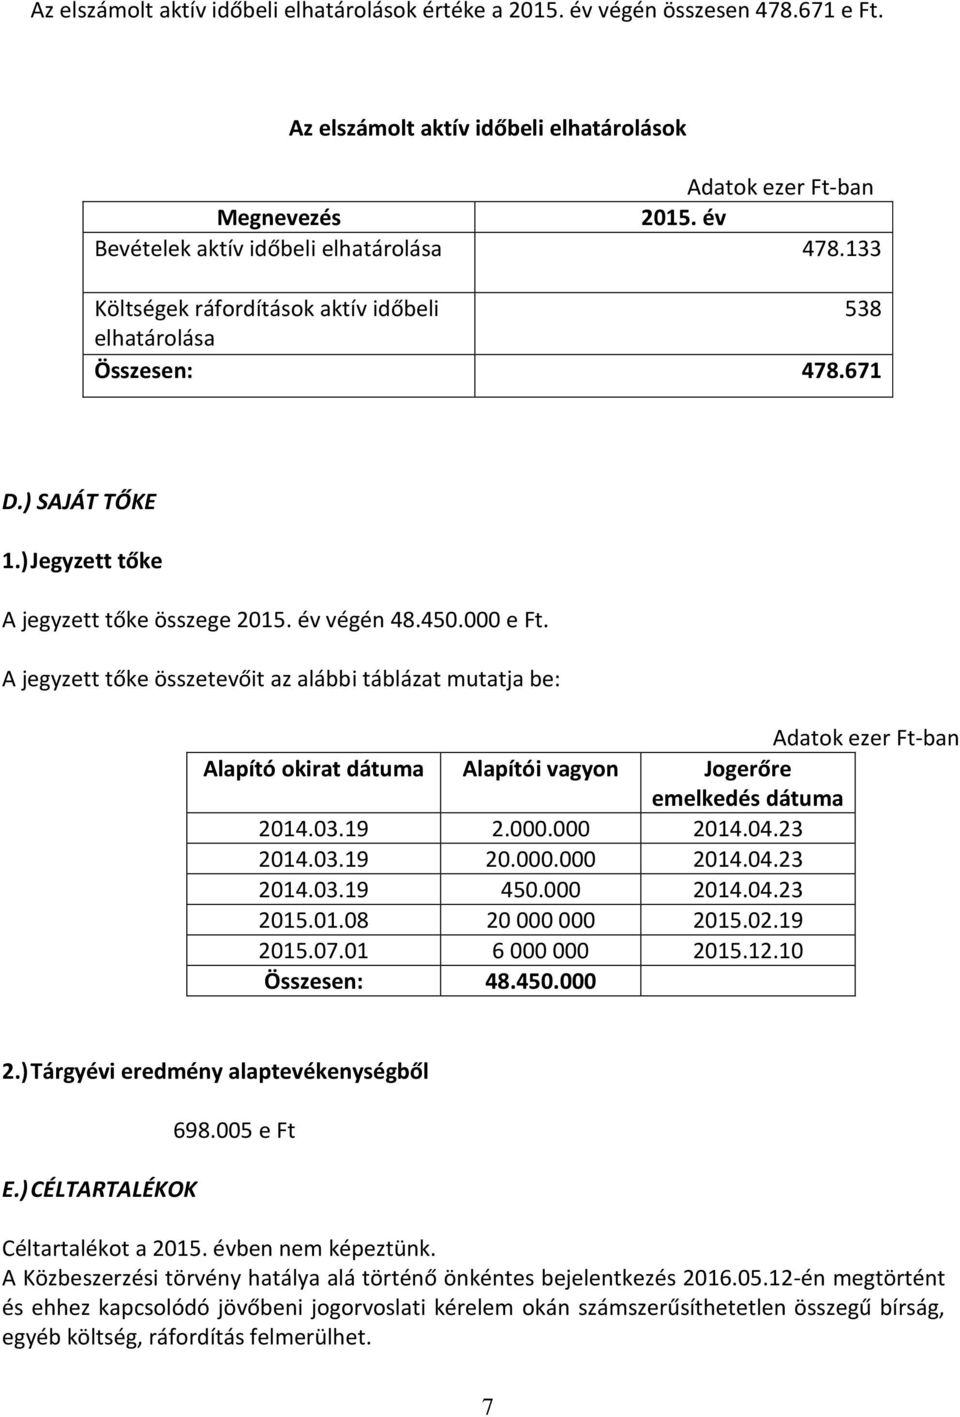 A jegyzett tőke összetevőit az alábbi táblázat mutatja be: Alapító okirat dátuma Alapítói vagyon Jogerőre emelkedés dátuma 2014.03.19 2.000.000 2014.04.23 2014.03.19 20.000.000 2014.04.23 2014.03.19 450.